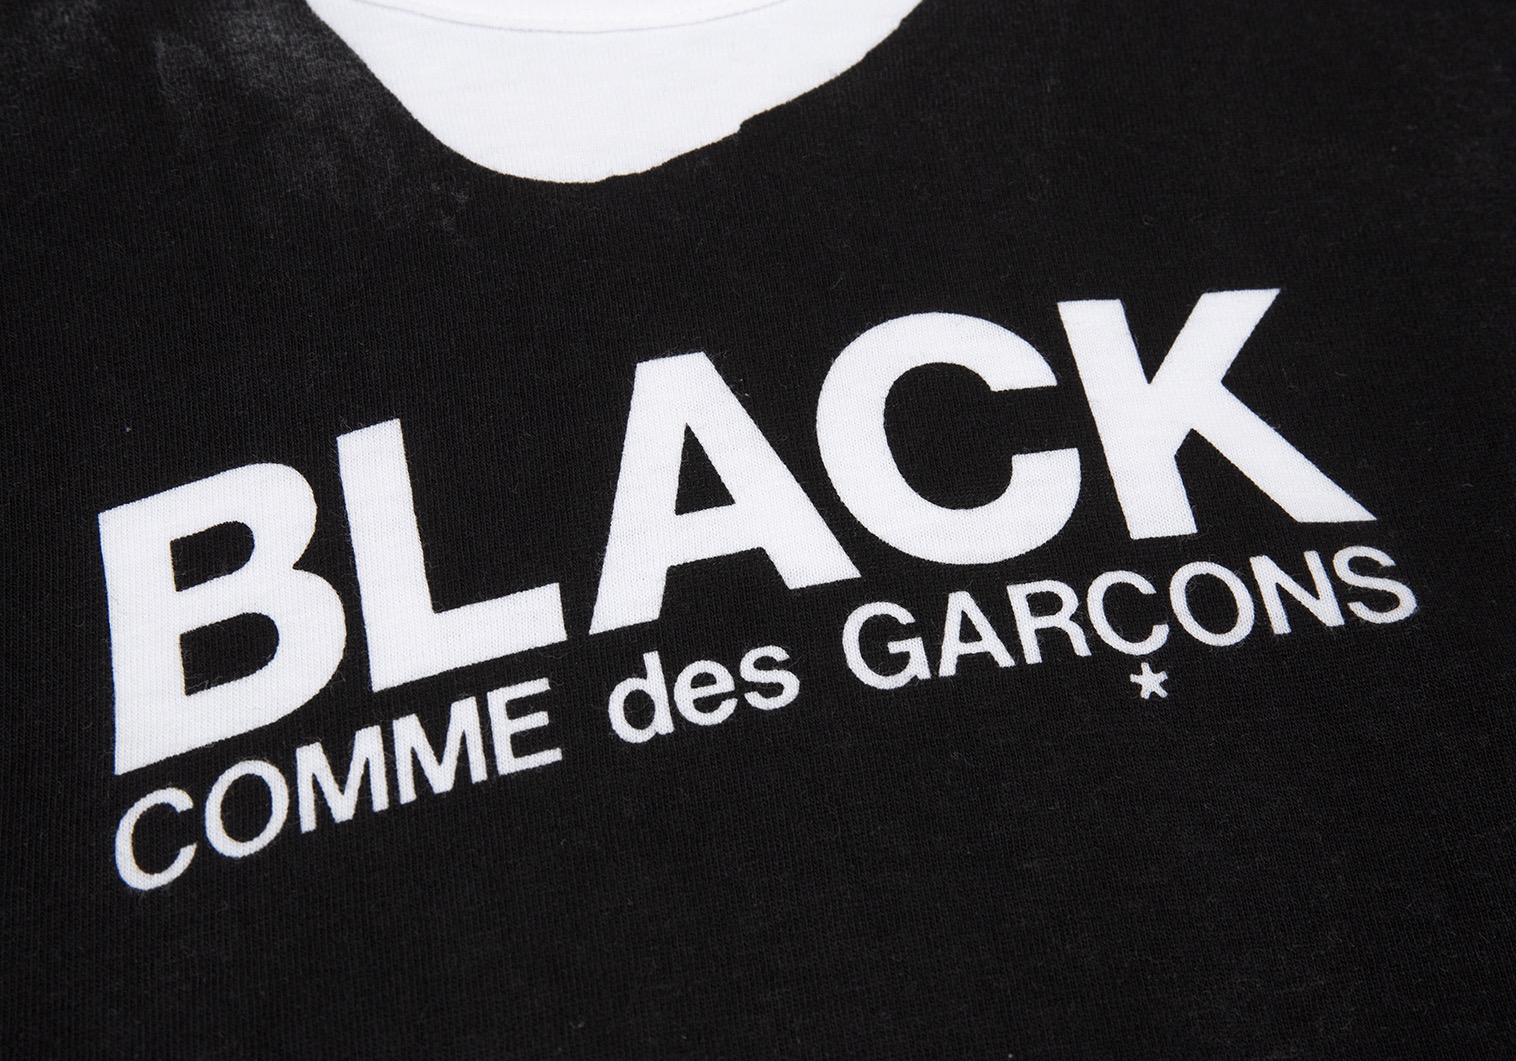 Tシャツ/カットソー(半袖/袖なし)COMME des GARCONS コムデギャルソン Tシャツ ロゴプリント クルーネック Tシャツ SZ-T013) CDG AD2018 ホワイト ブラック 白黒 M トップス カットソー 半袖 【メンズ】